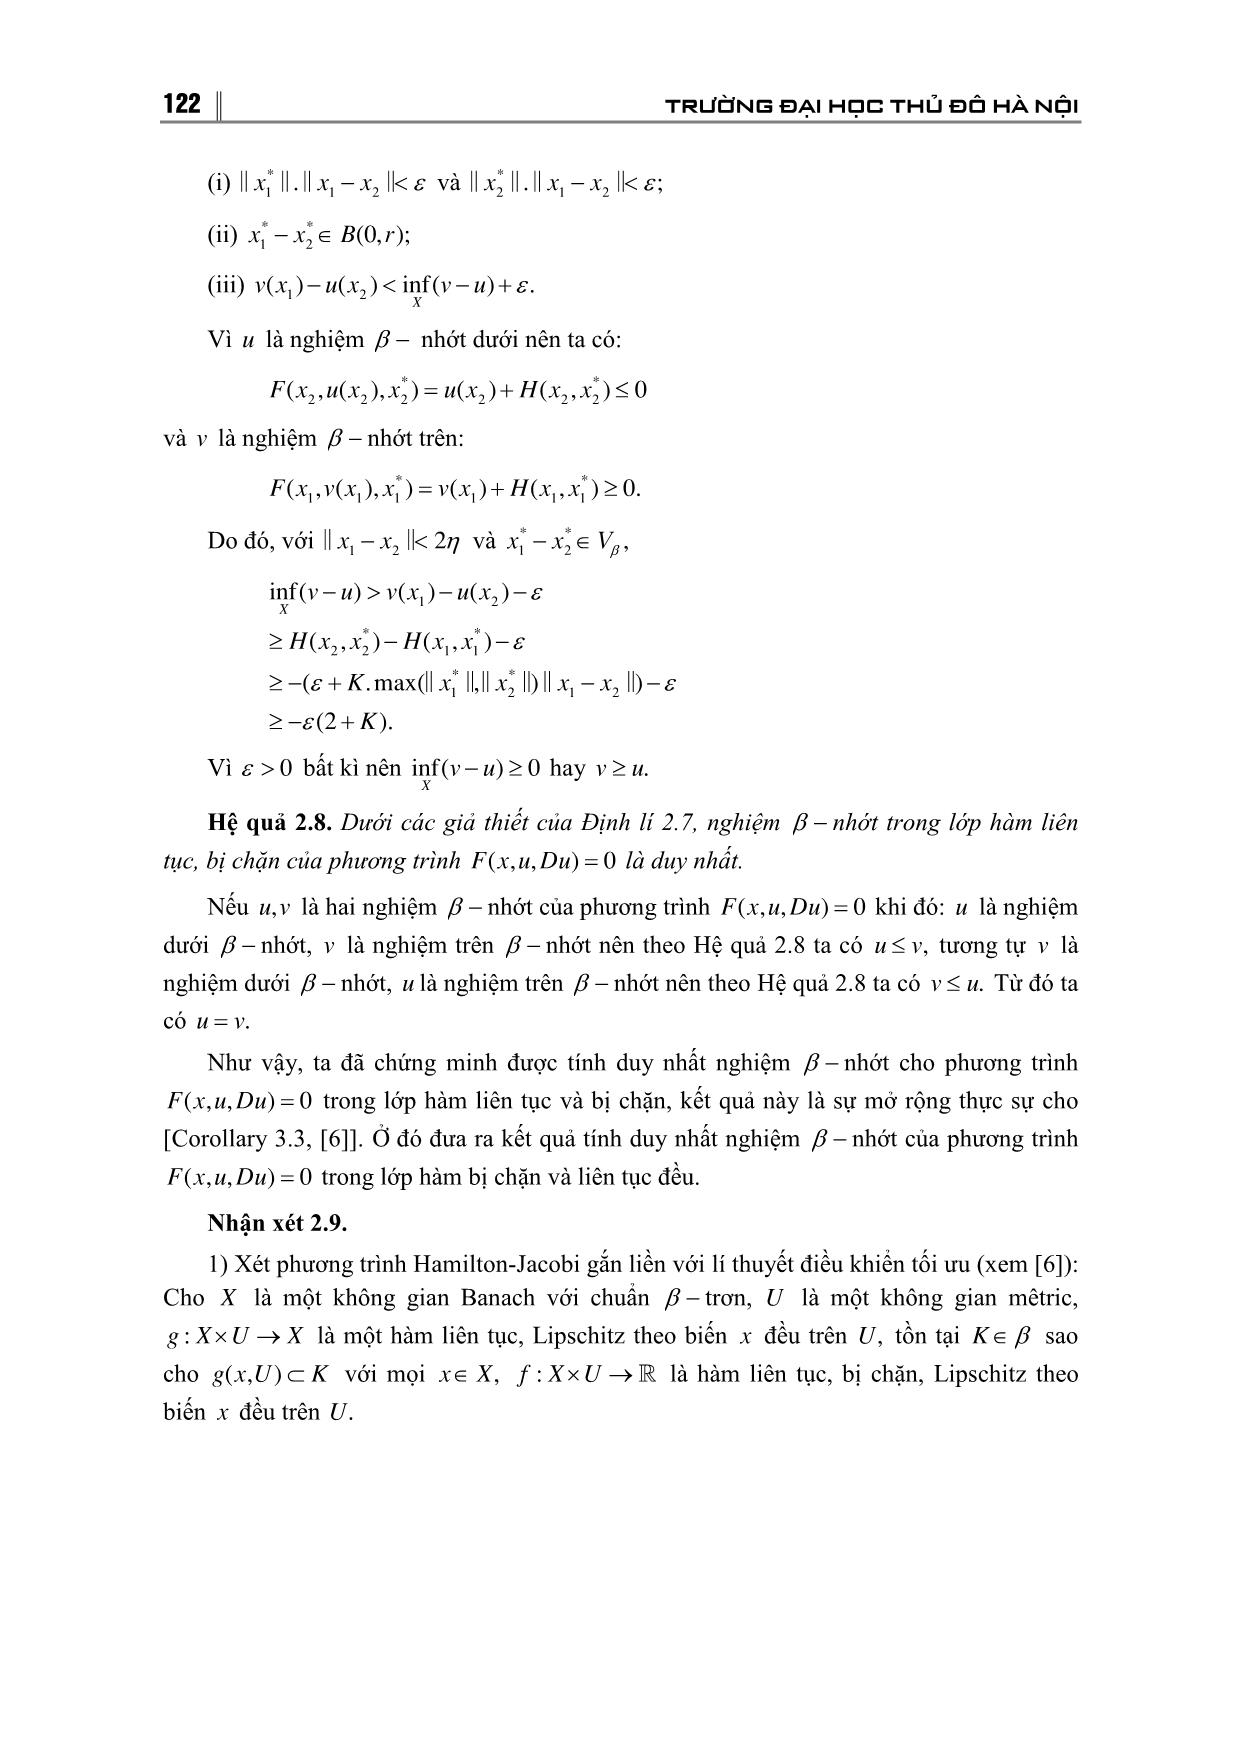 Tính duy nhất nghiệm của β - Nhớt của phương trình Hamilton-Jacobi trong không gian Banach trang 8